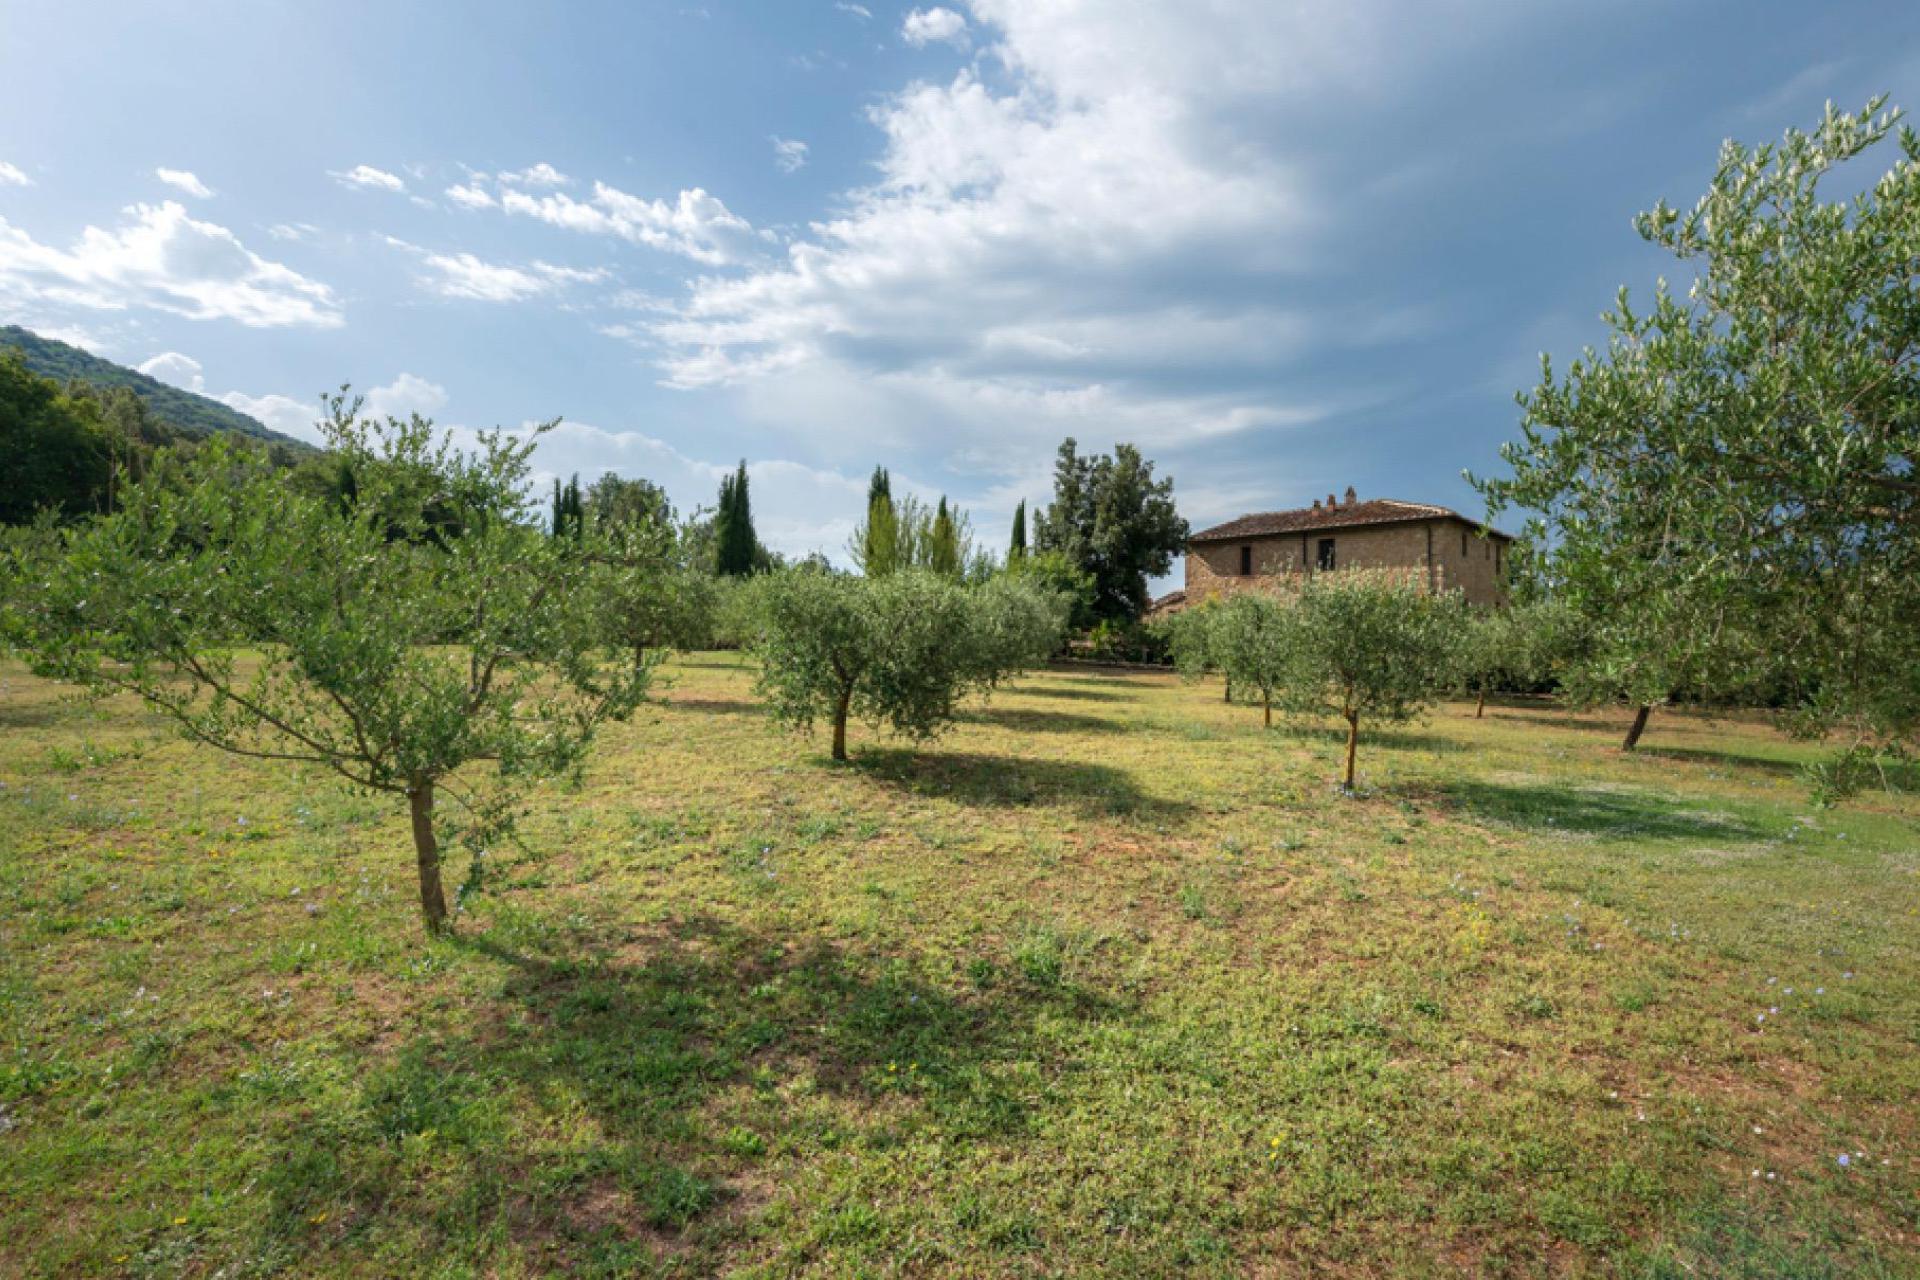 Agriturismo voor liefhebbers van natuur en cultuur in Toscane